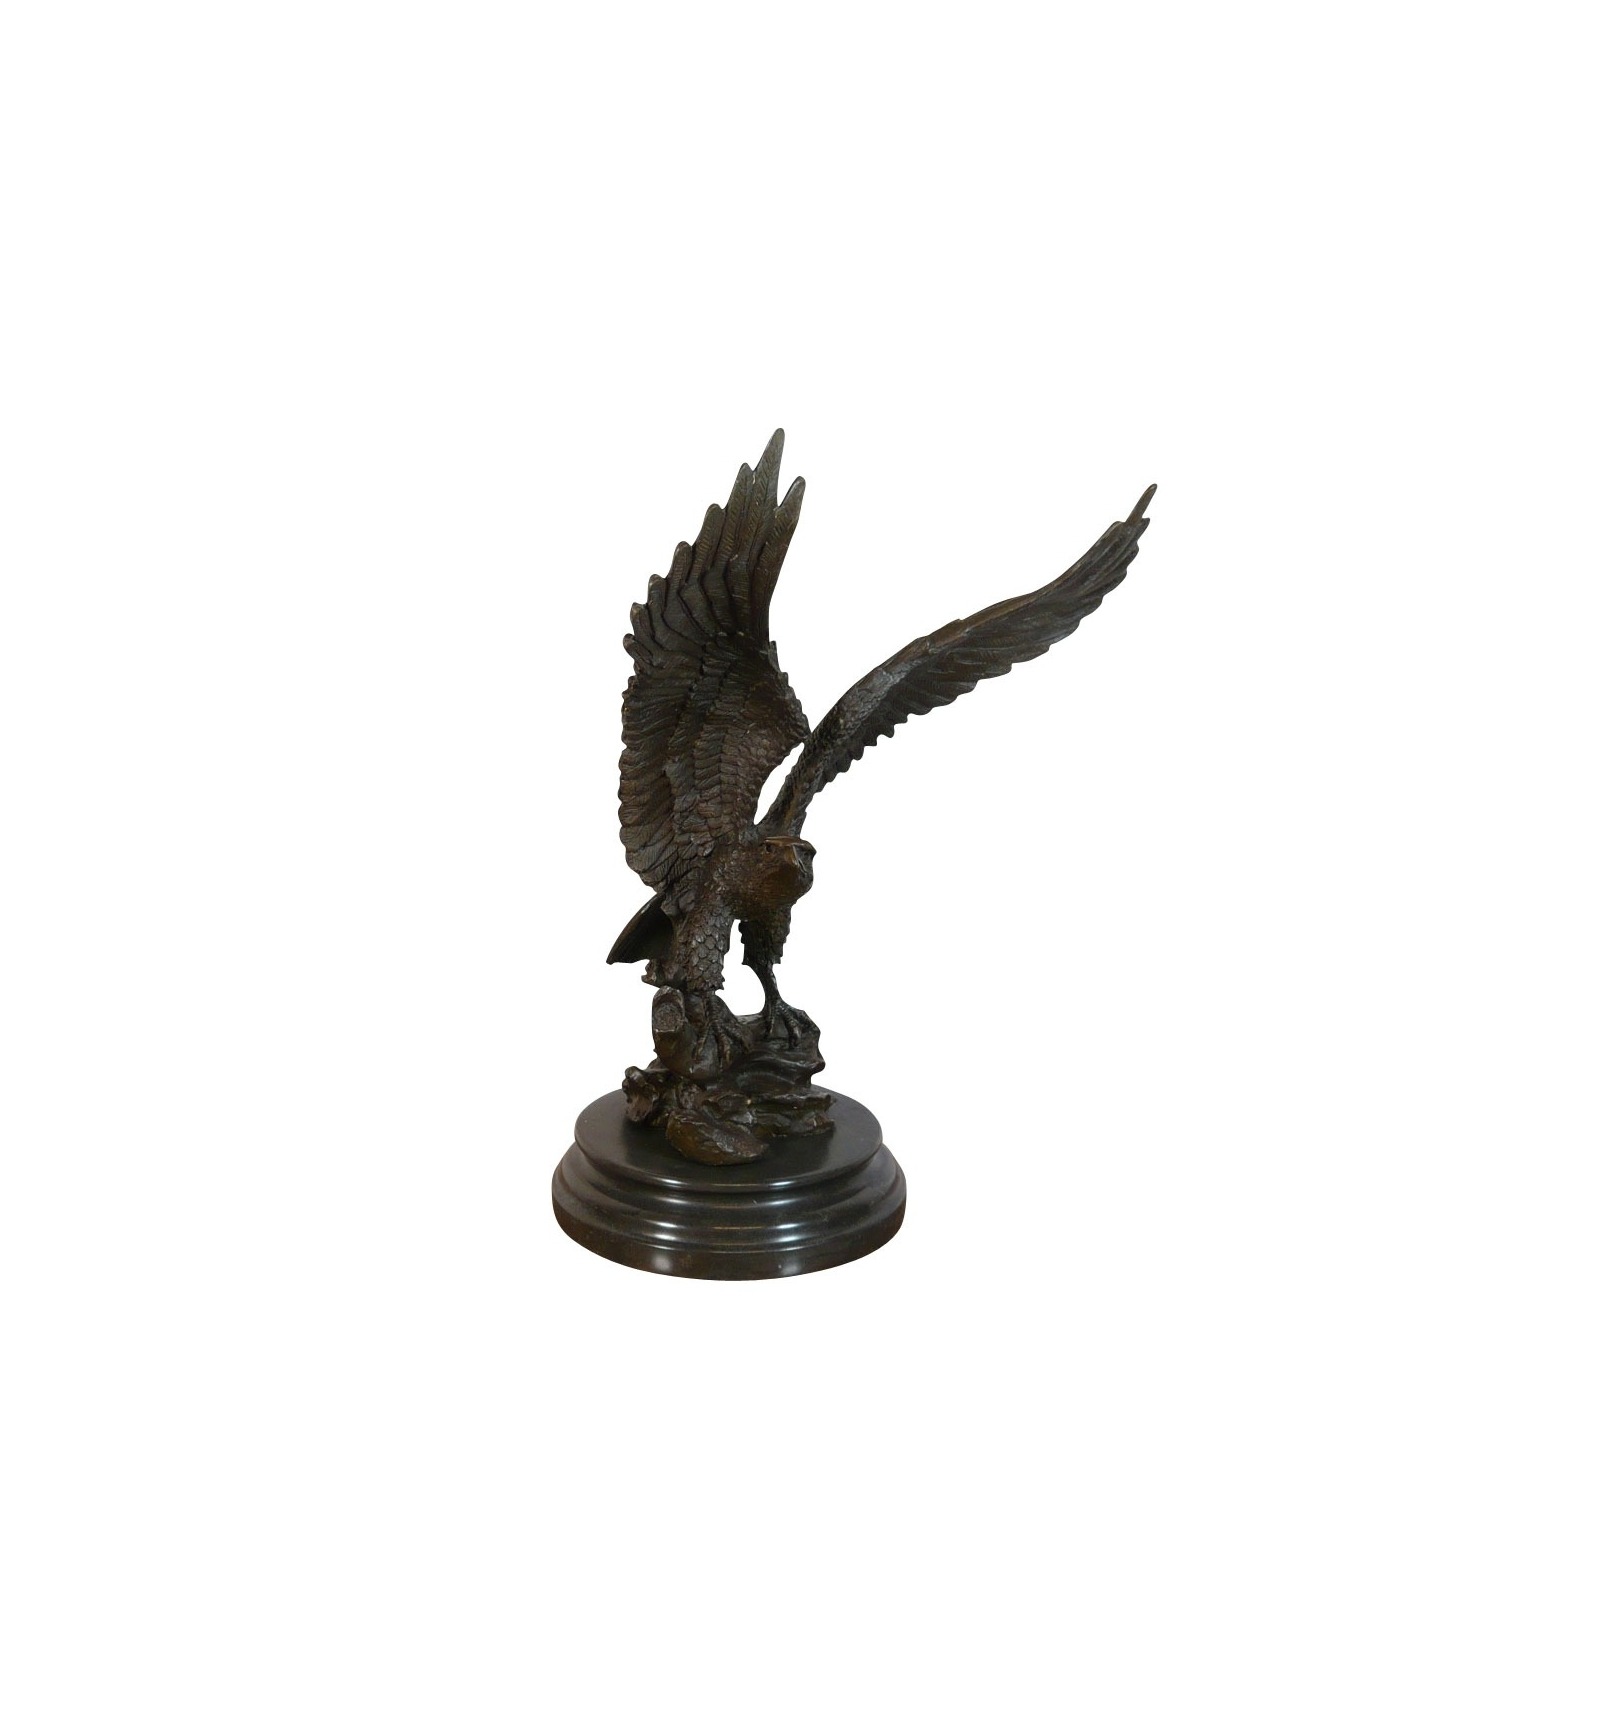 Tête d'aigle sur socle en marbre - Statue en bronze - Sculptures